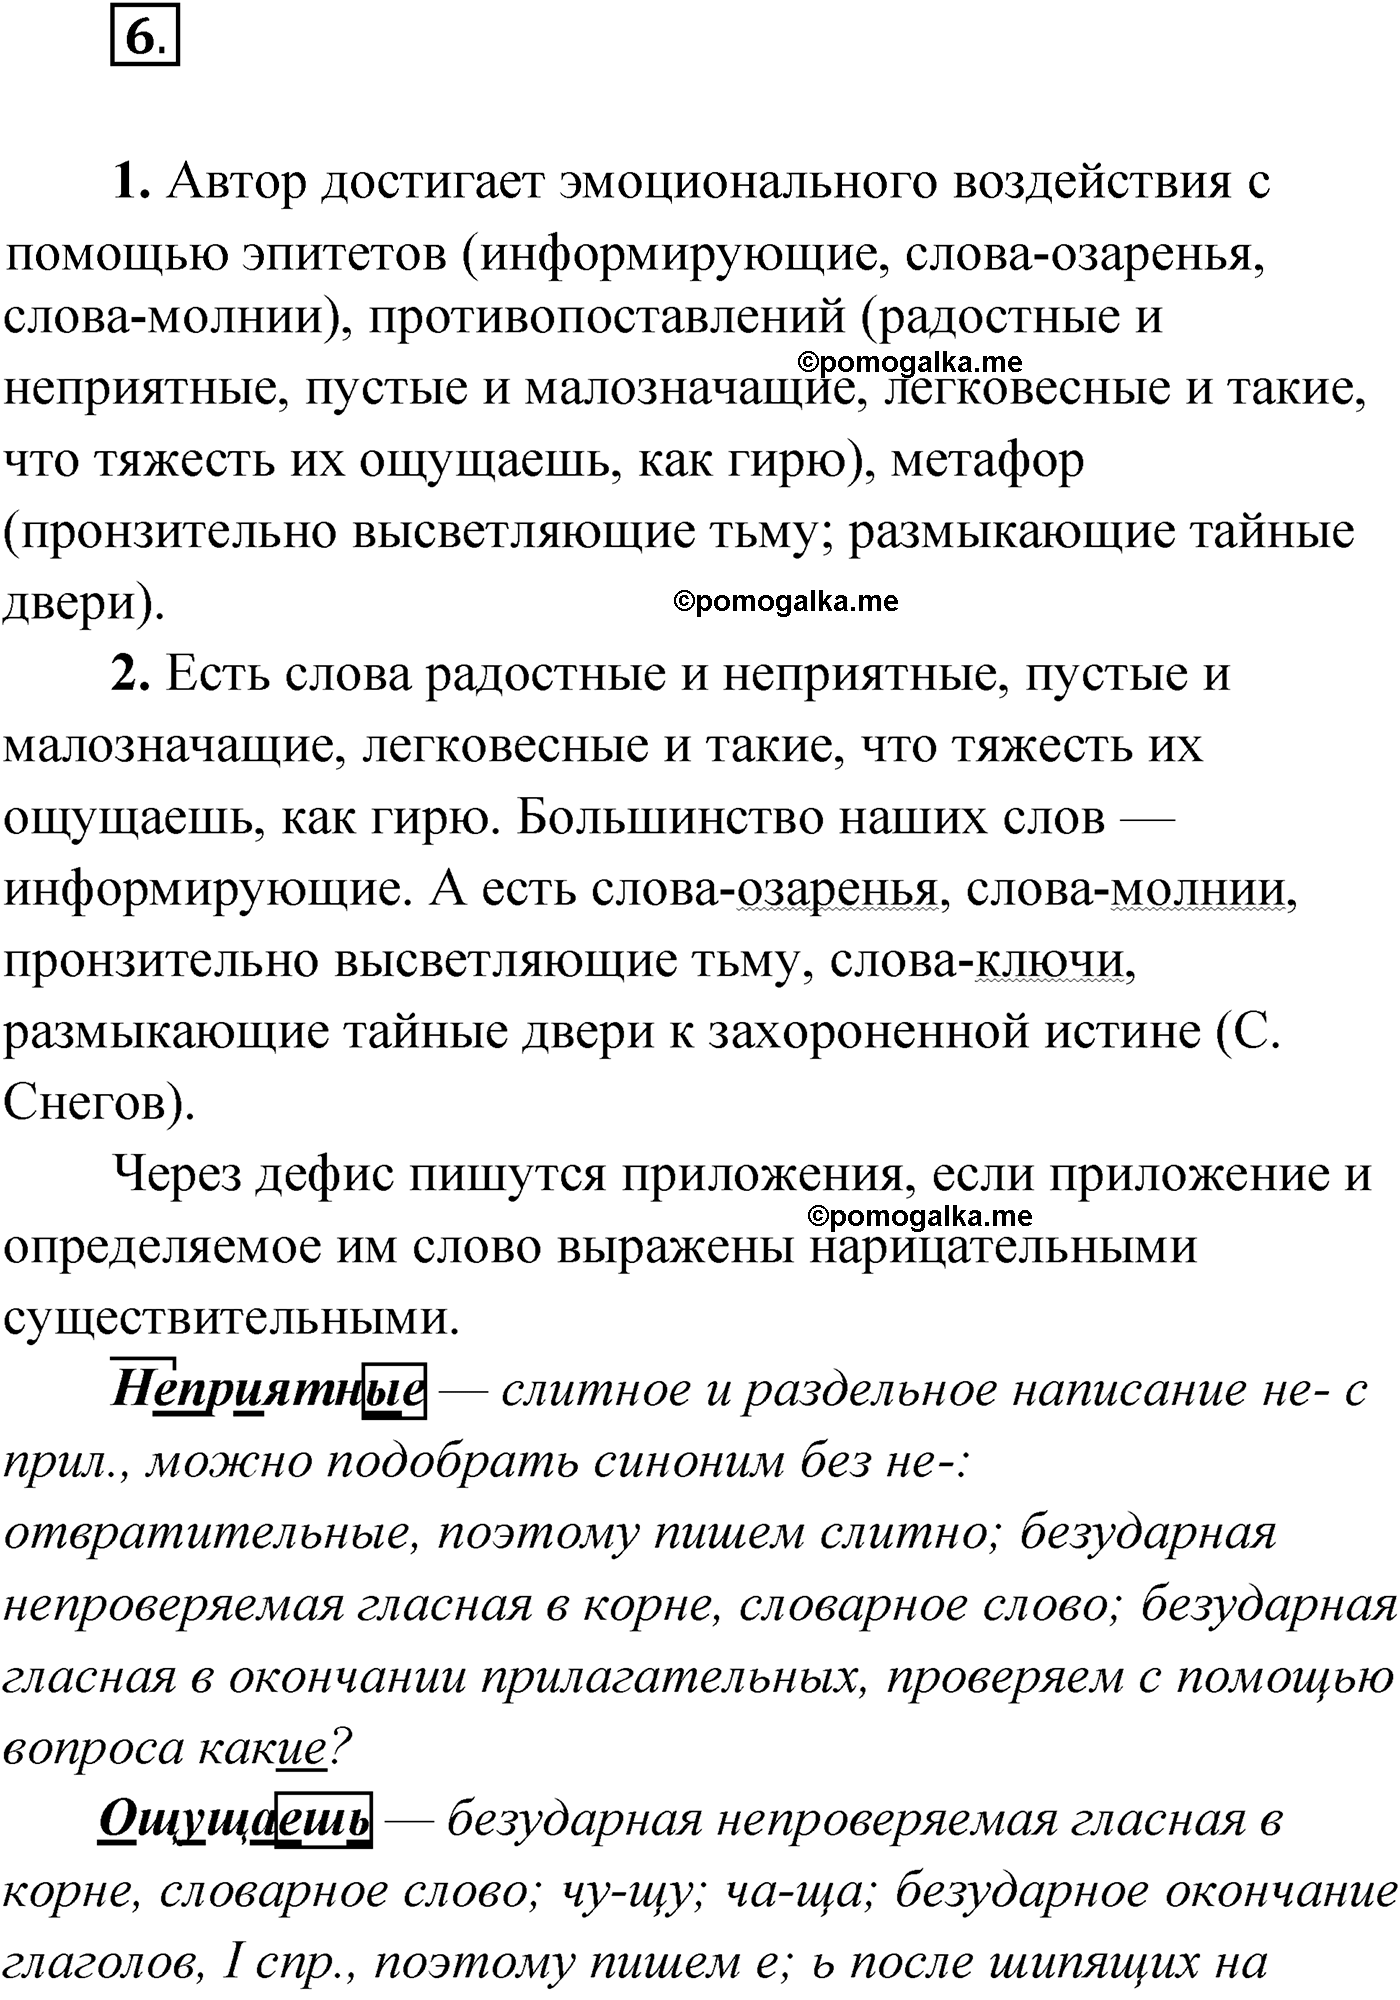 упражнение №6 русский язык 9 класс Мурина 2019 год